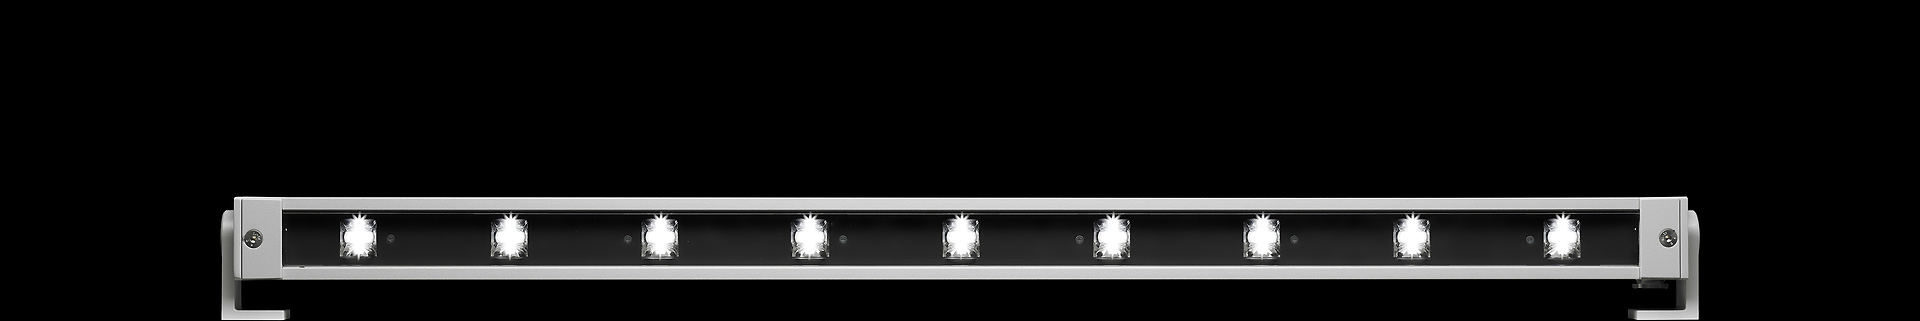 LED facade lampe, wall washer lysarmatur til lineær belysning IP65 Ecoline fra Willy Meyer DELUX DENMARK 